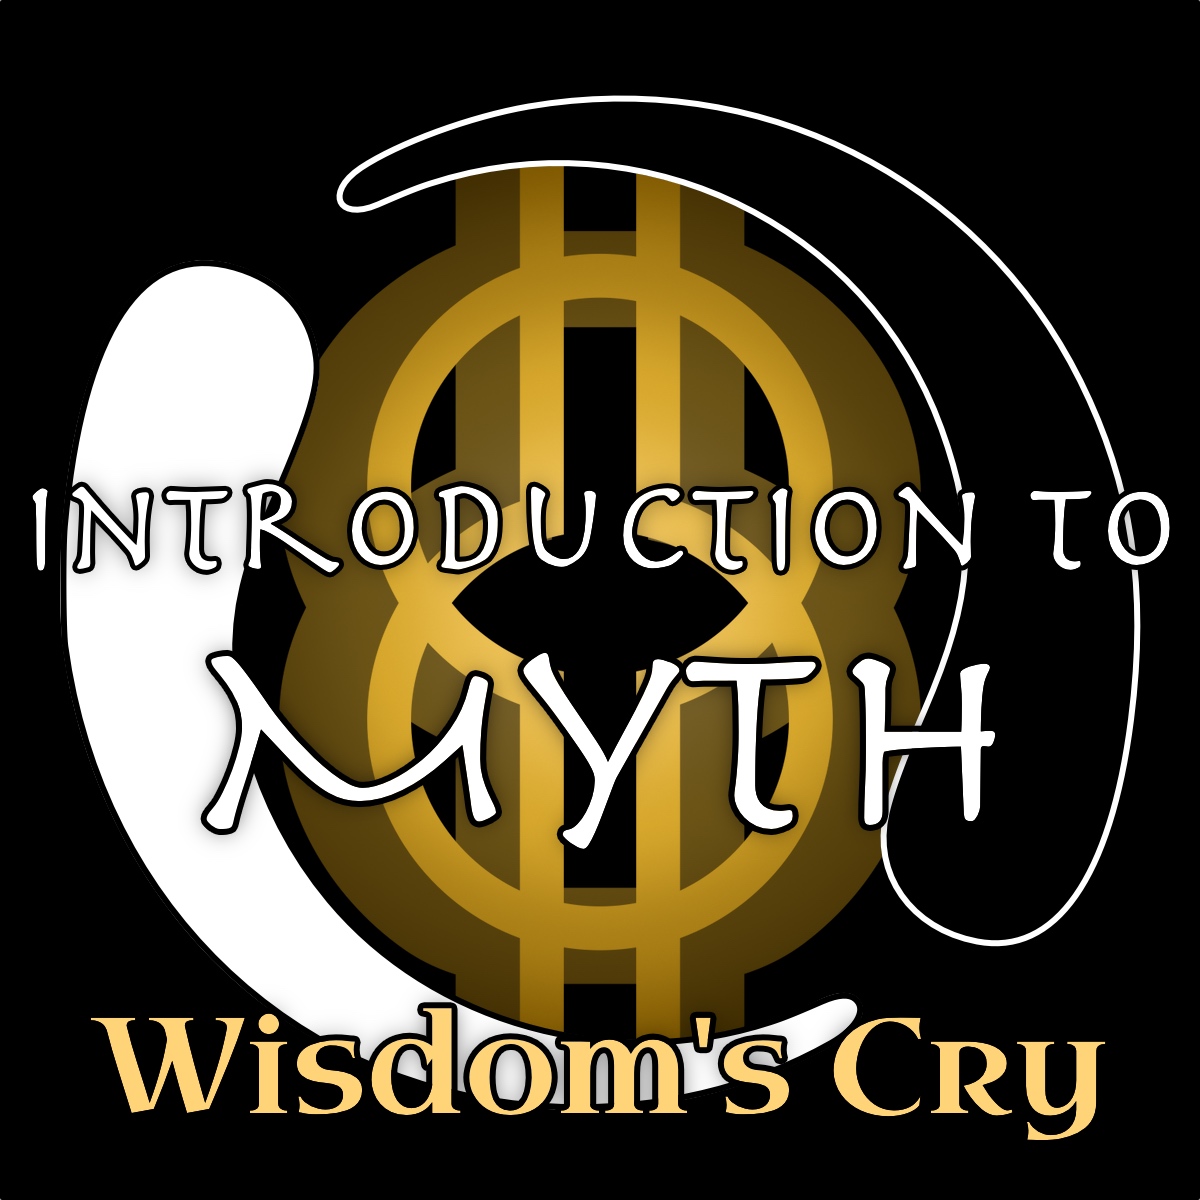 16- Introduction to Mythology